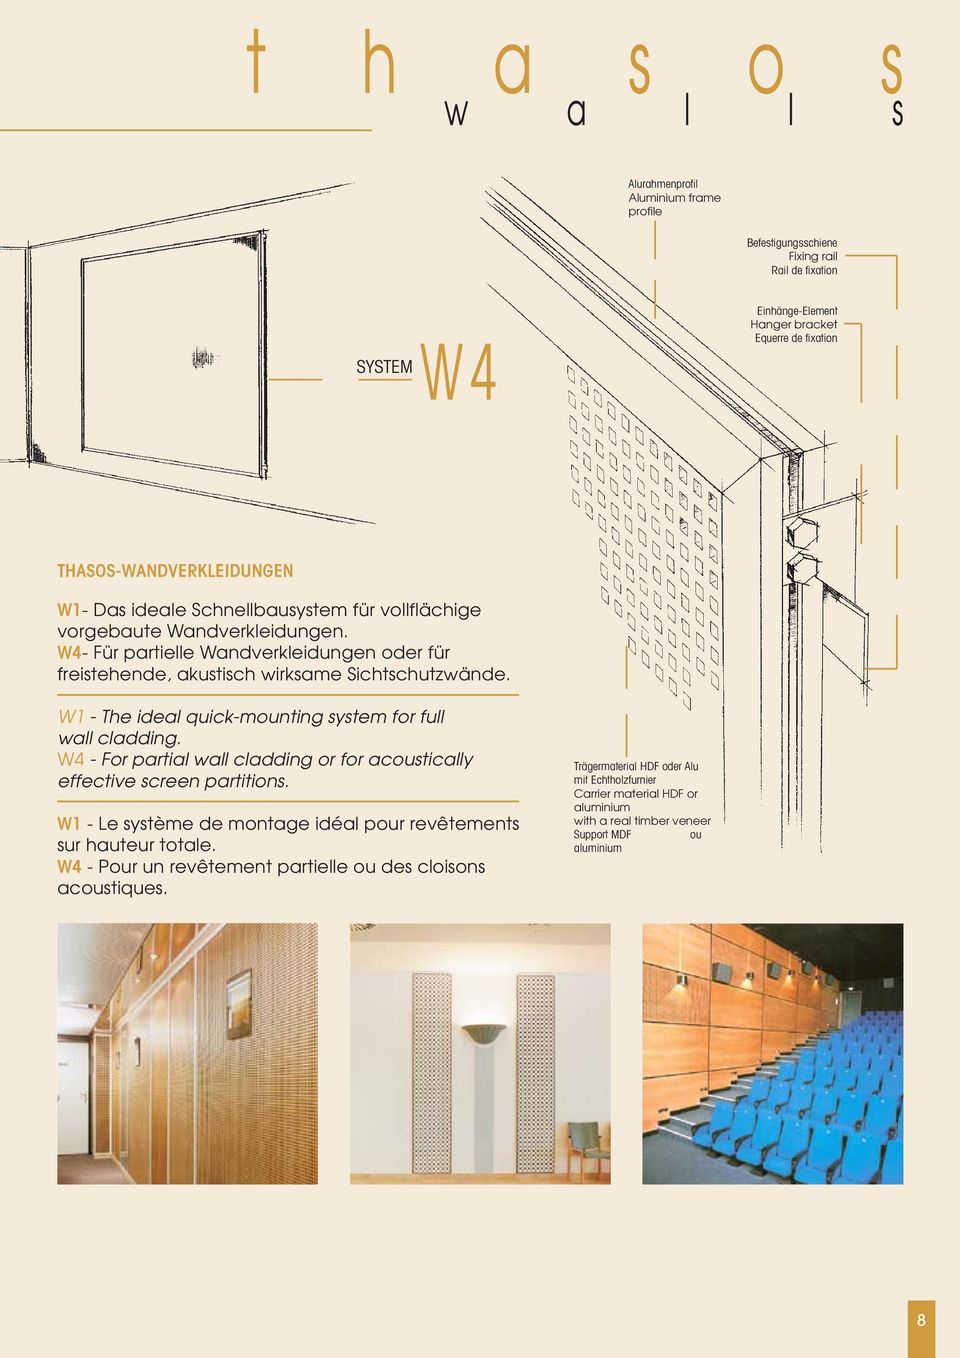 W4- Für partielle Wandverkleidungen oder für freistehende, akustisch wirksame Sichtschutzwände. W1 - The ideal quick-mounting system for full wall cladding.